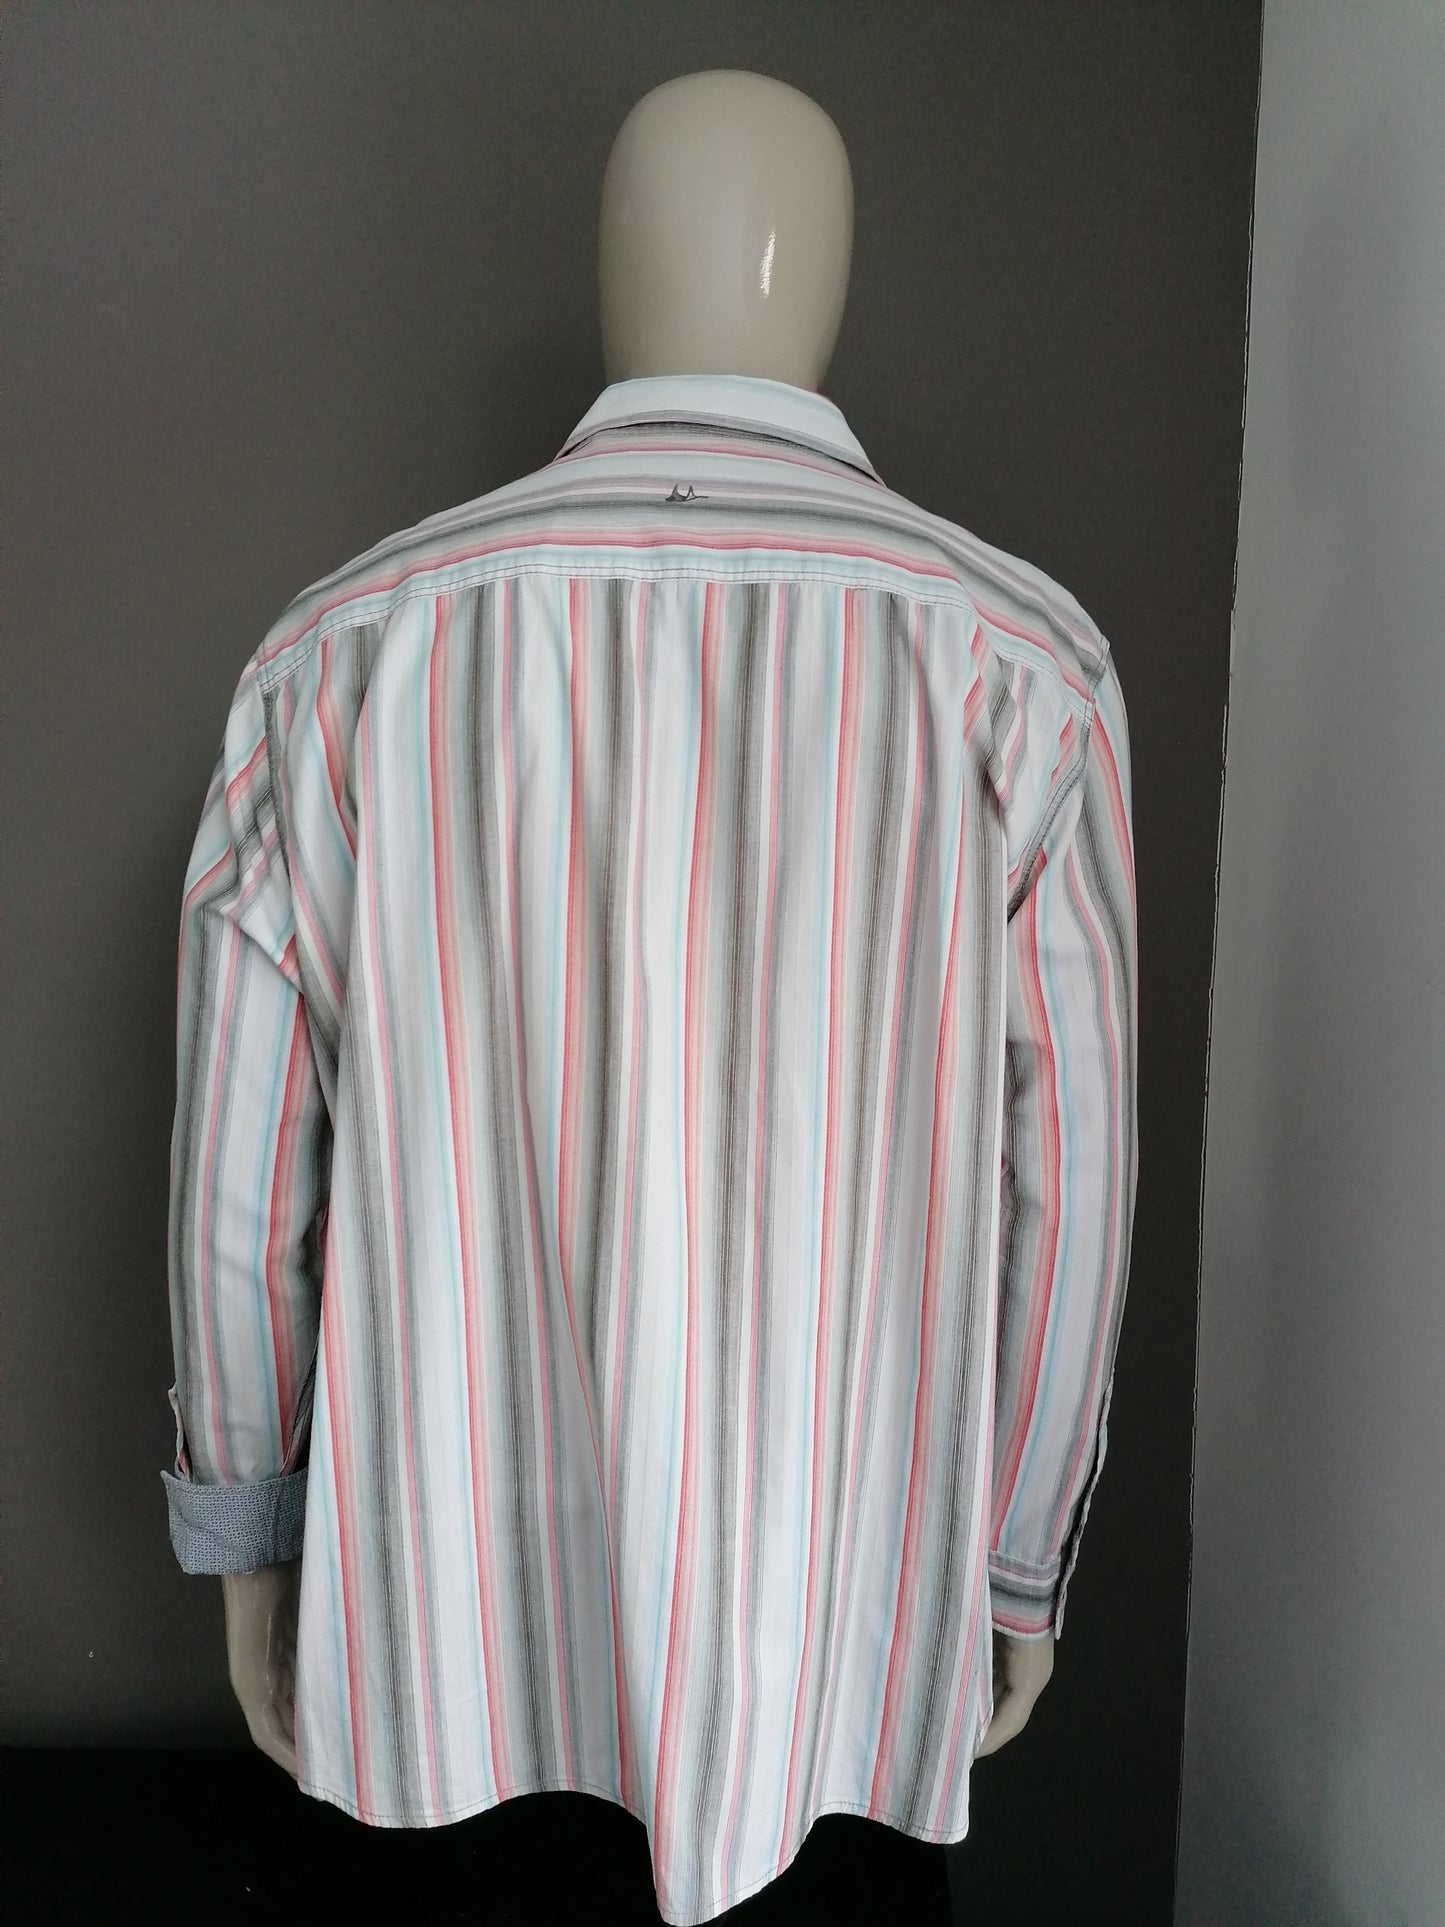 Mantray-Shirt. Rotes graues blaues Weiß gestreift. Größe XXXL / 3XL.